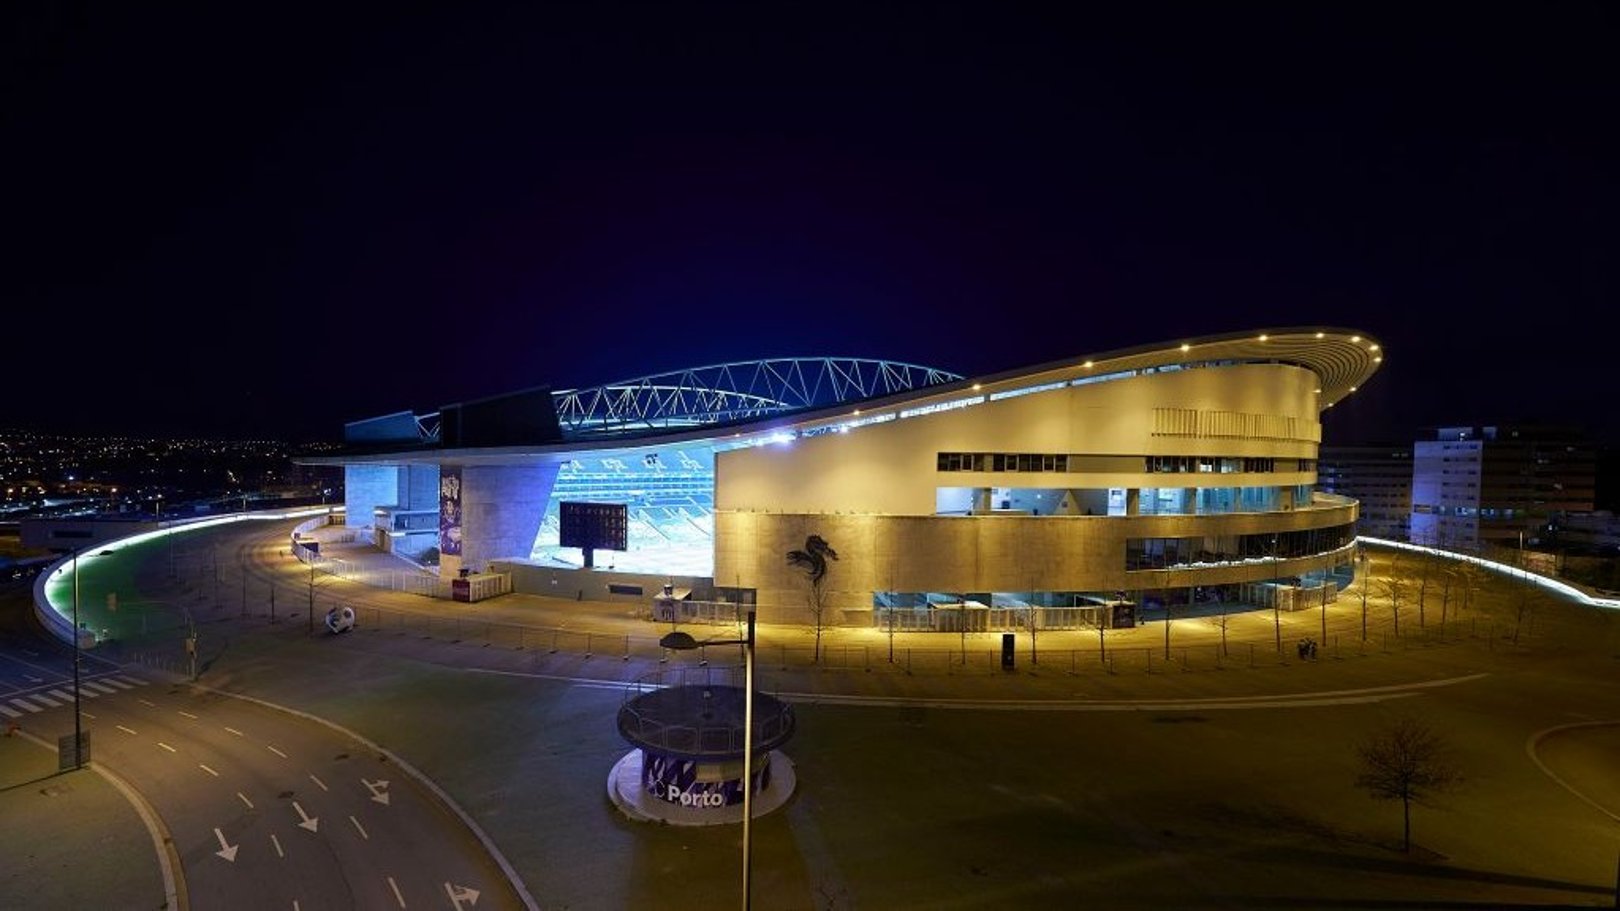 SET THE SCENE: The Estádio do Dragão ahead of kick-off...